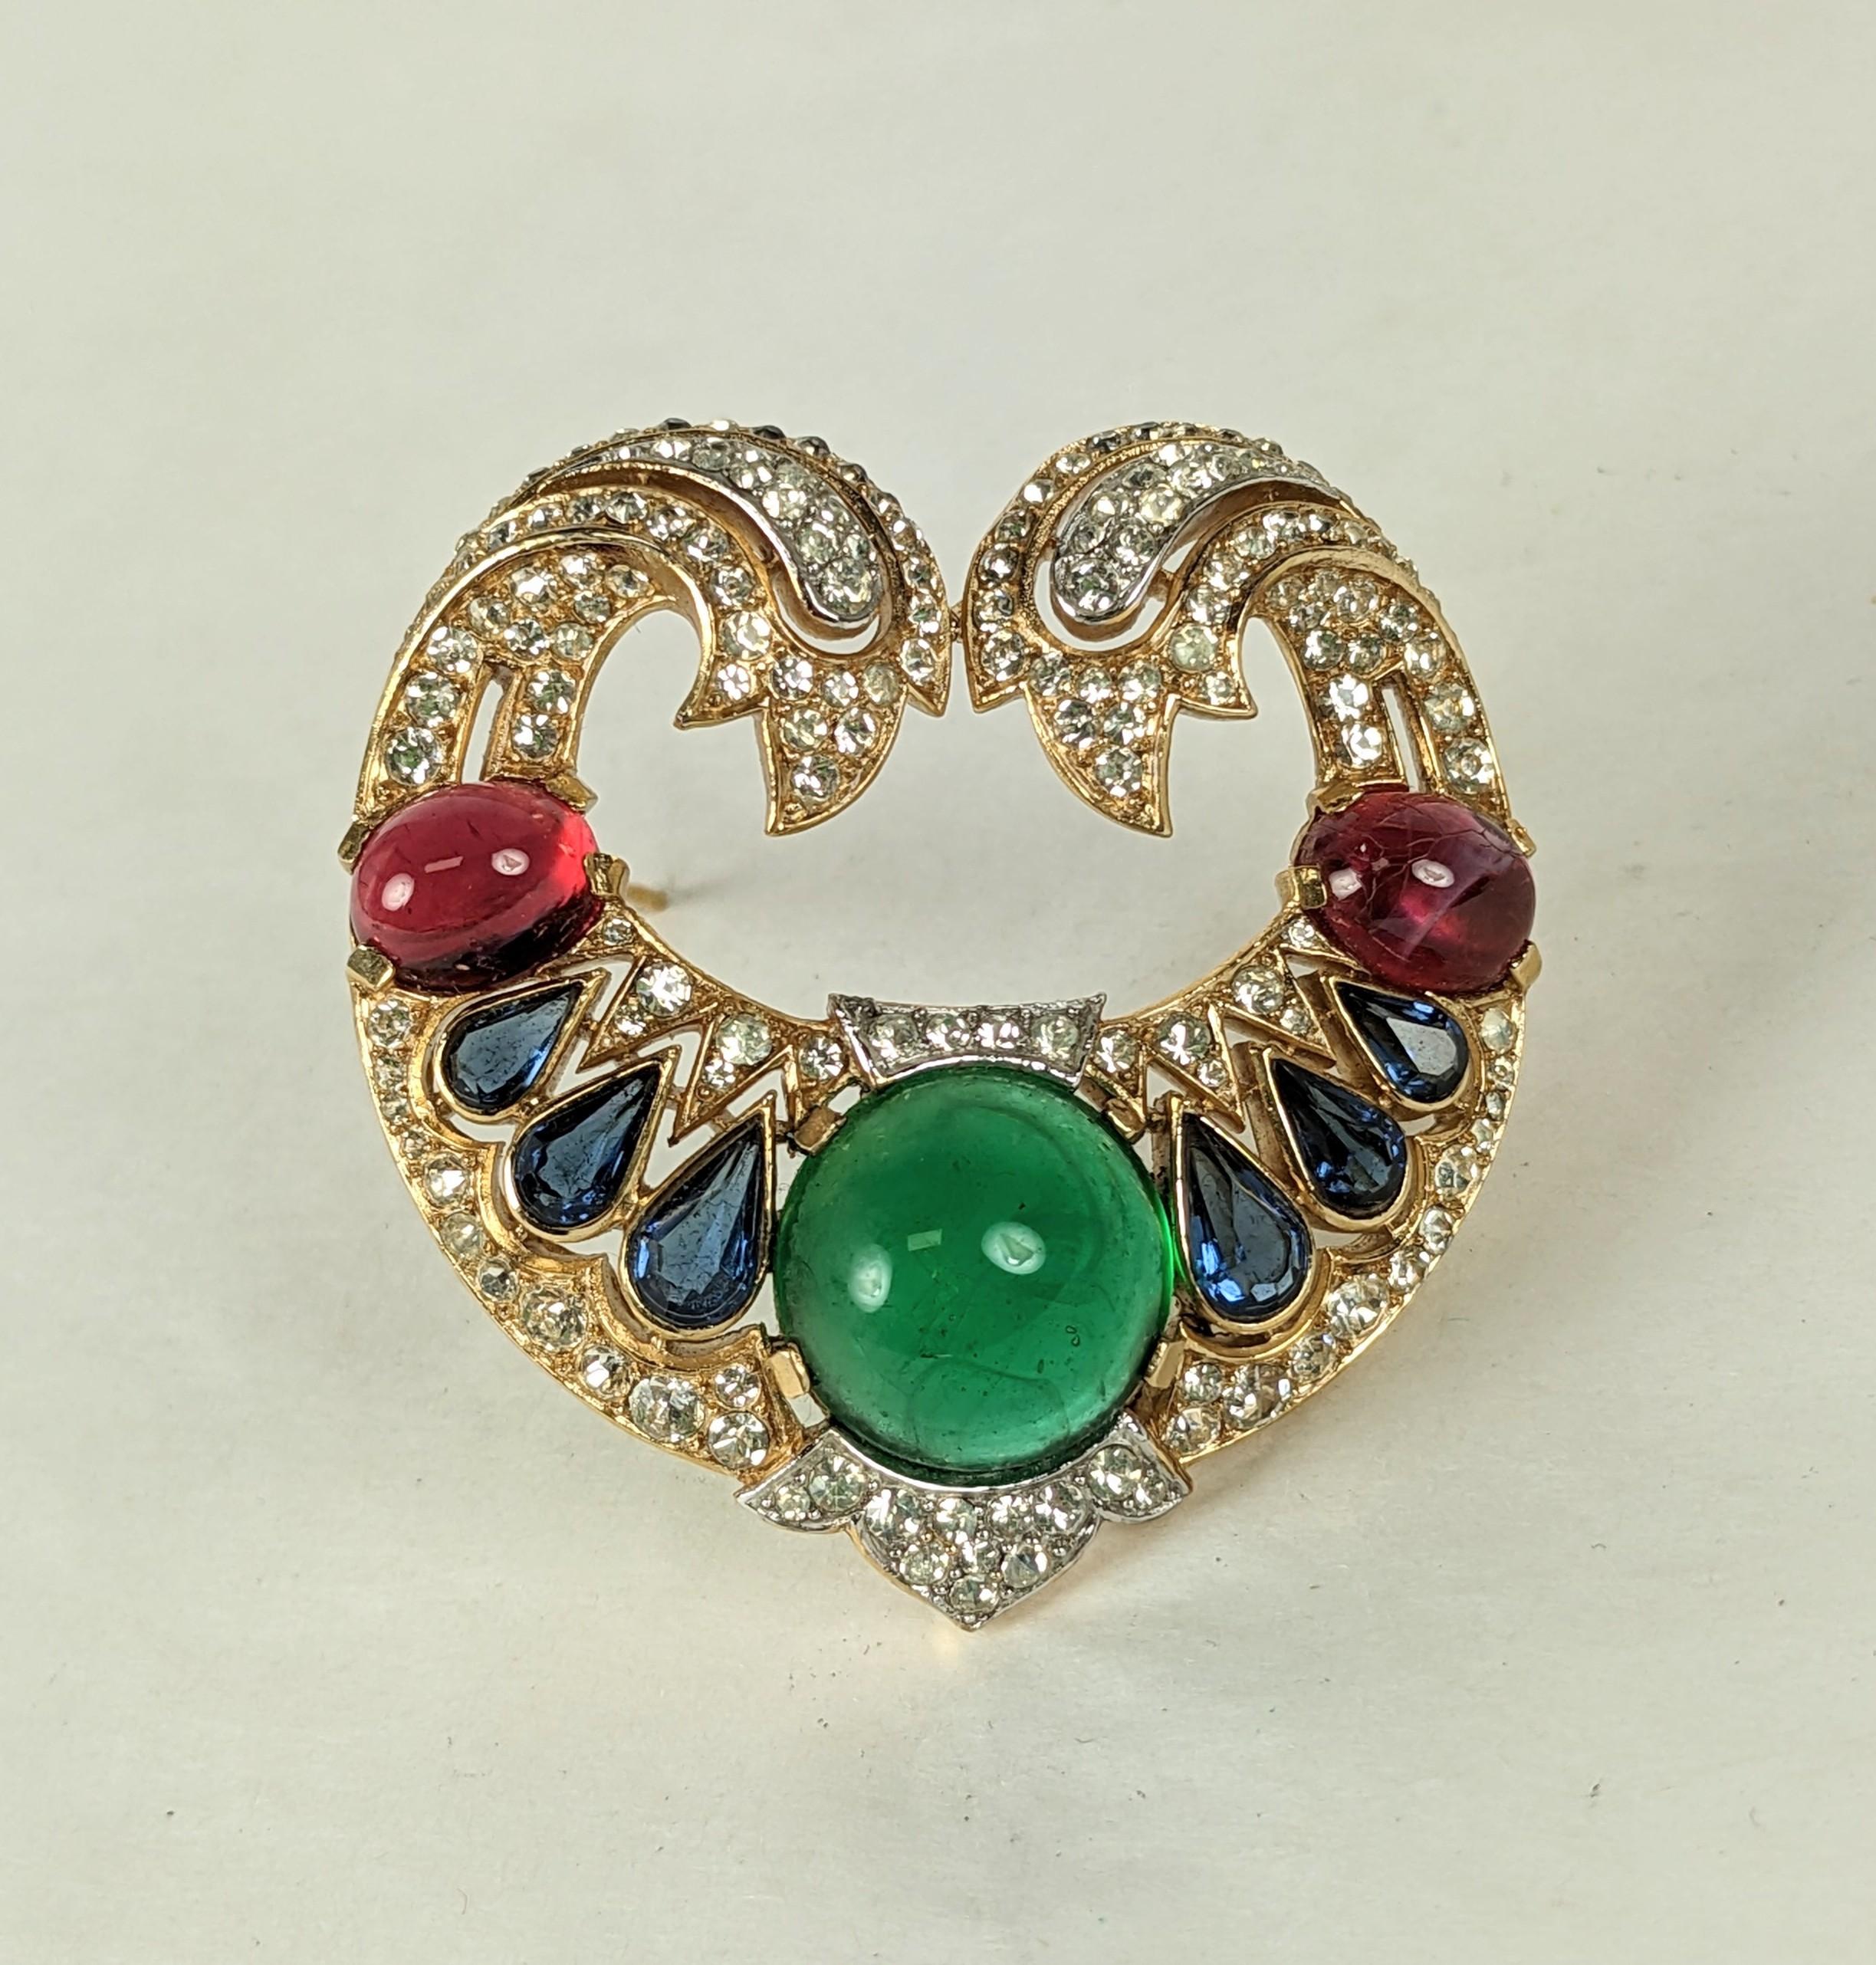 Seltene Trifari Jewels of India Brosche aus der Moghul-Serie. Aufwändige Kristallarbeiten in vergoldetem und rhodiniertem Metall mit Cabochon-Steinen in Juwelenfarben. 
1960er Jahre USA. 2